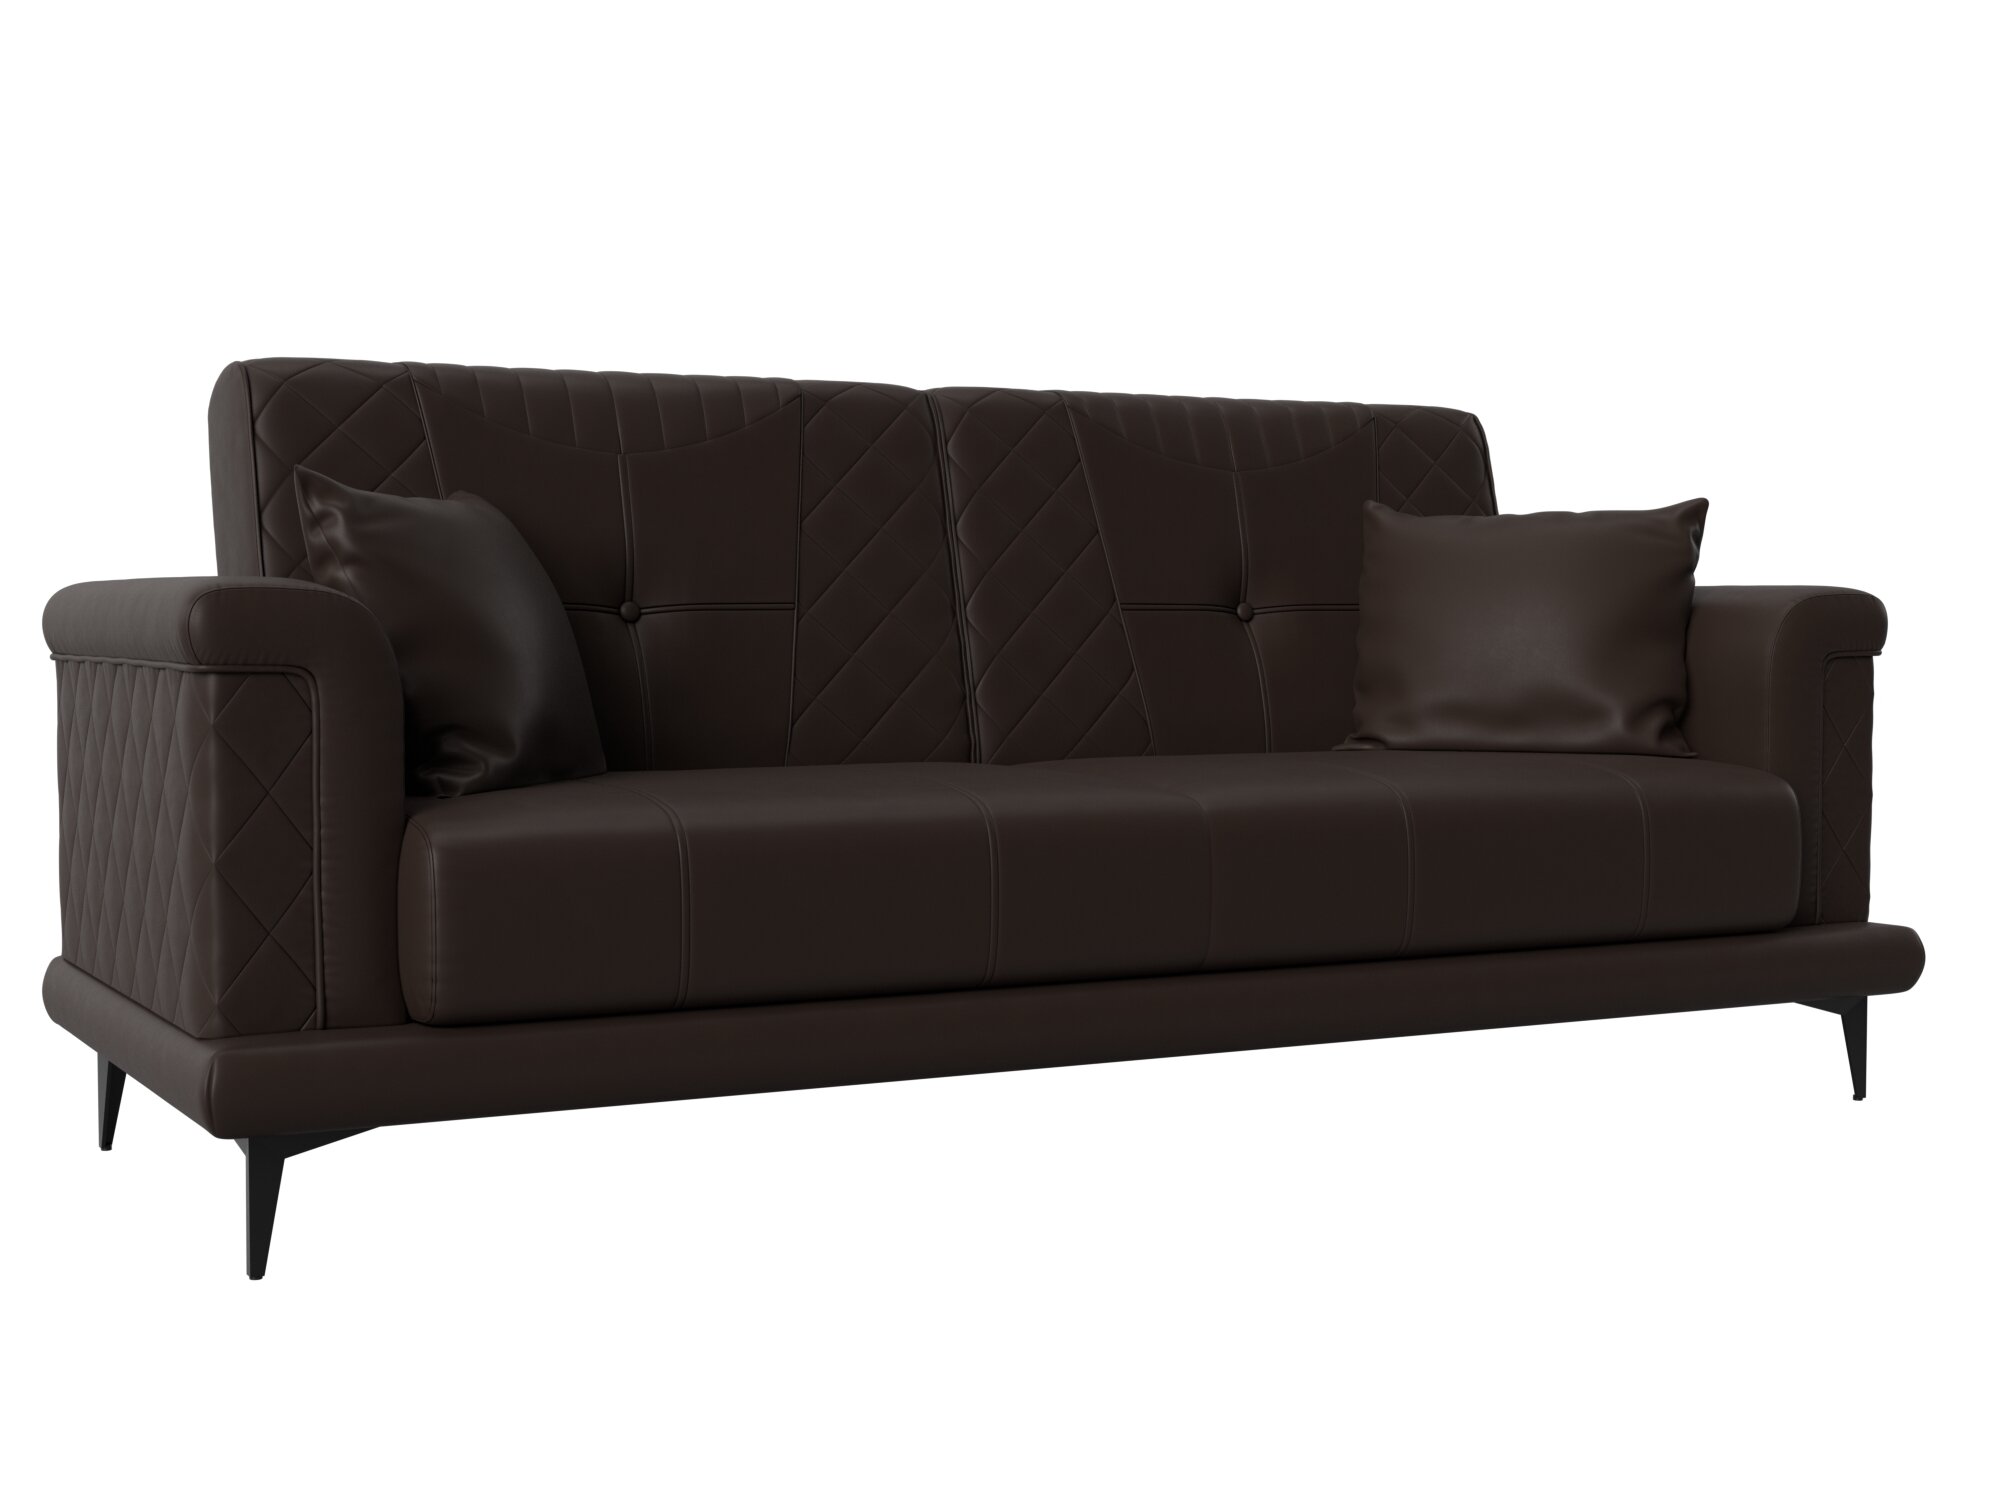 Прямой диван Неаполь, Экокожа, Модель 111948